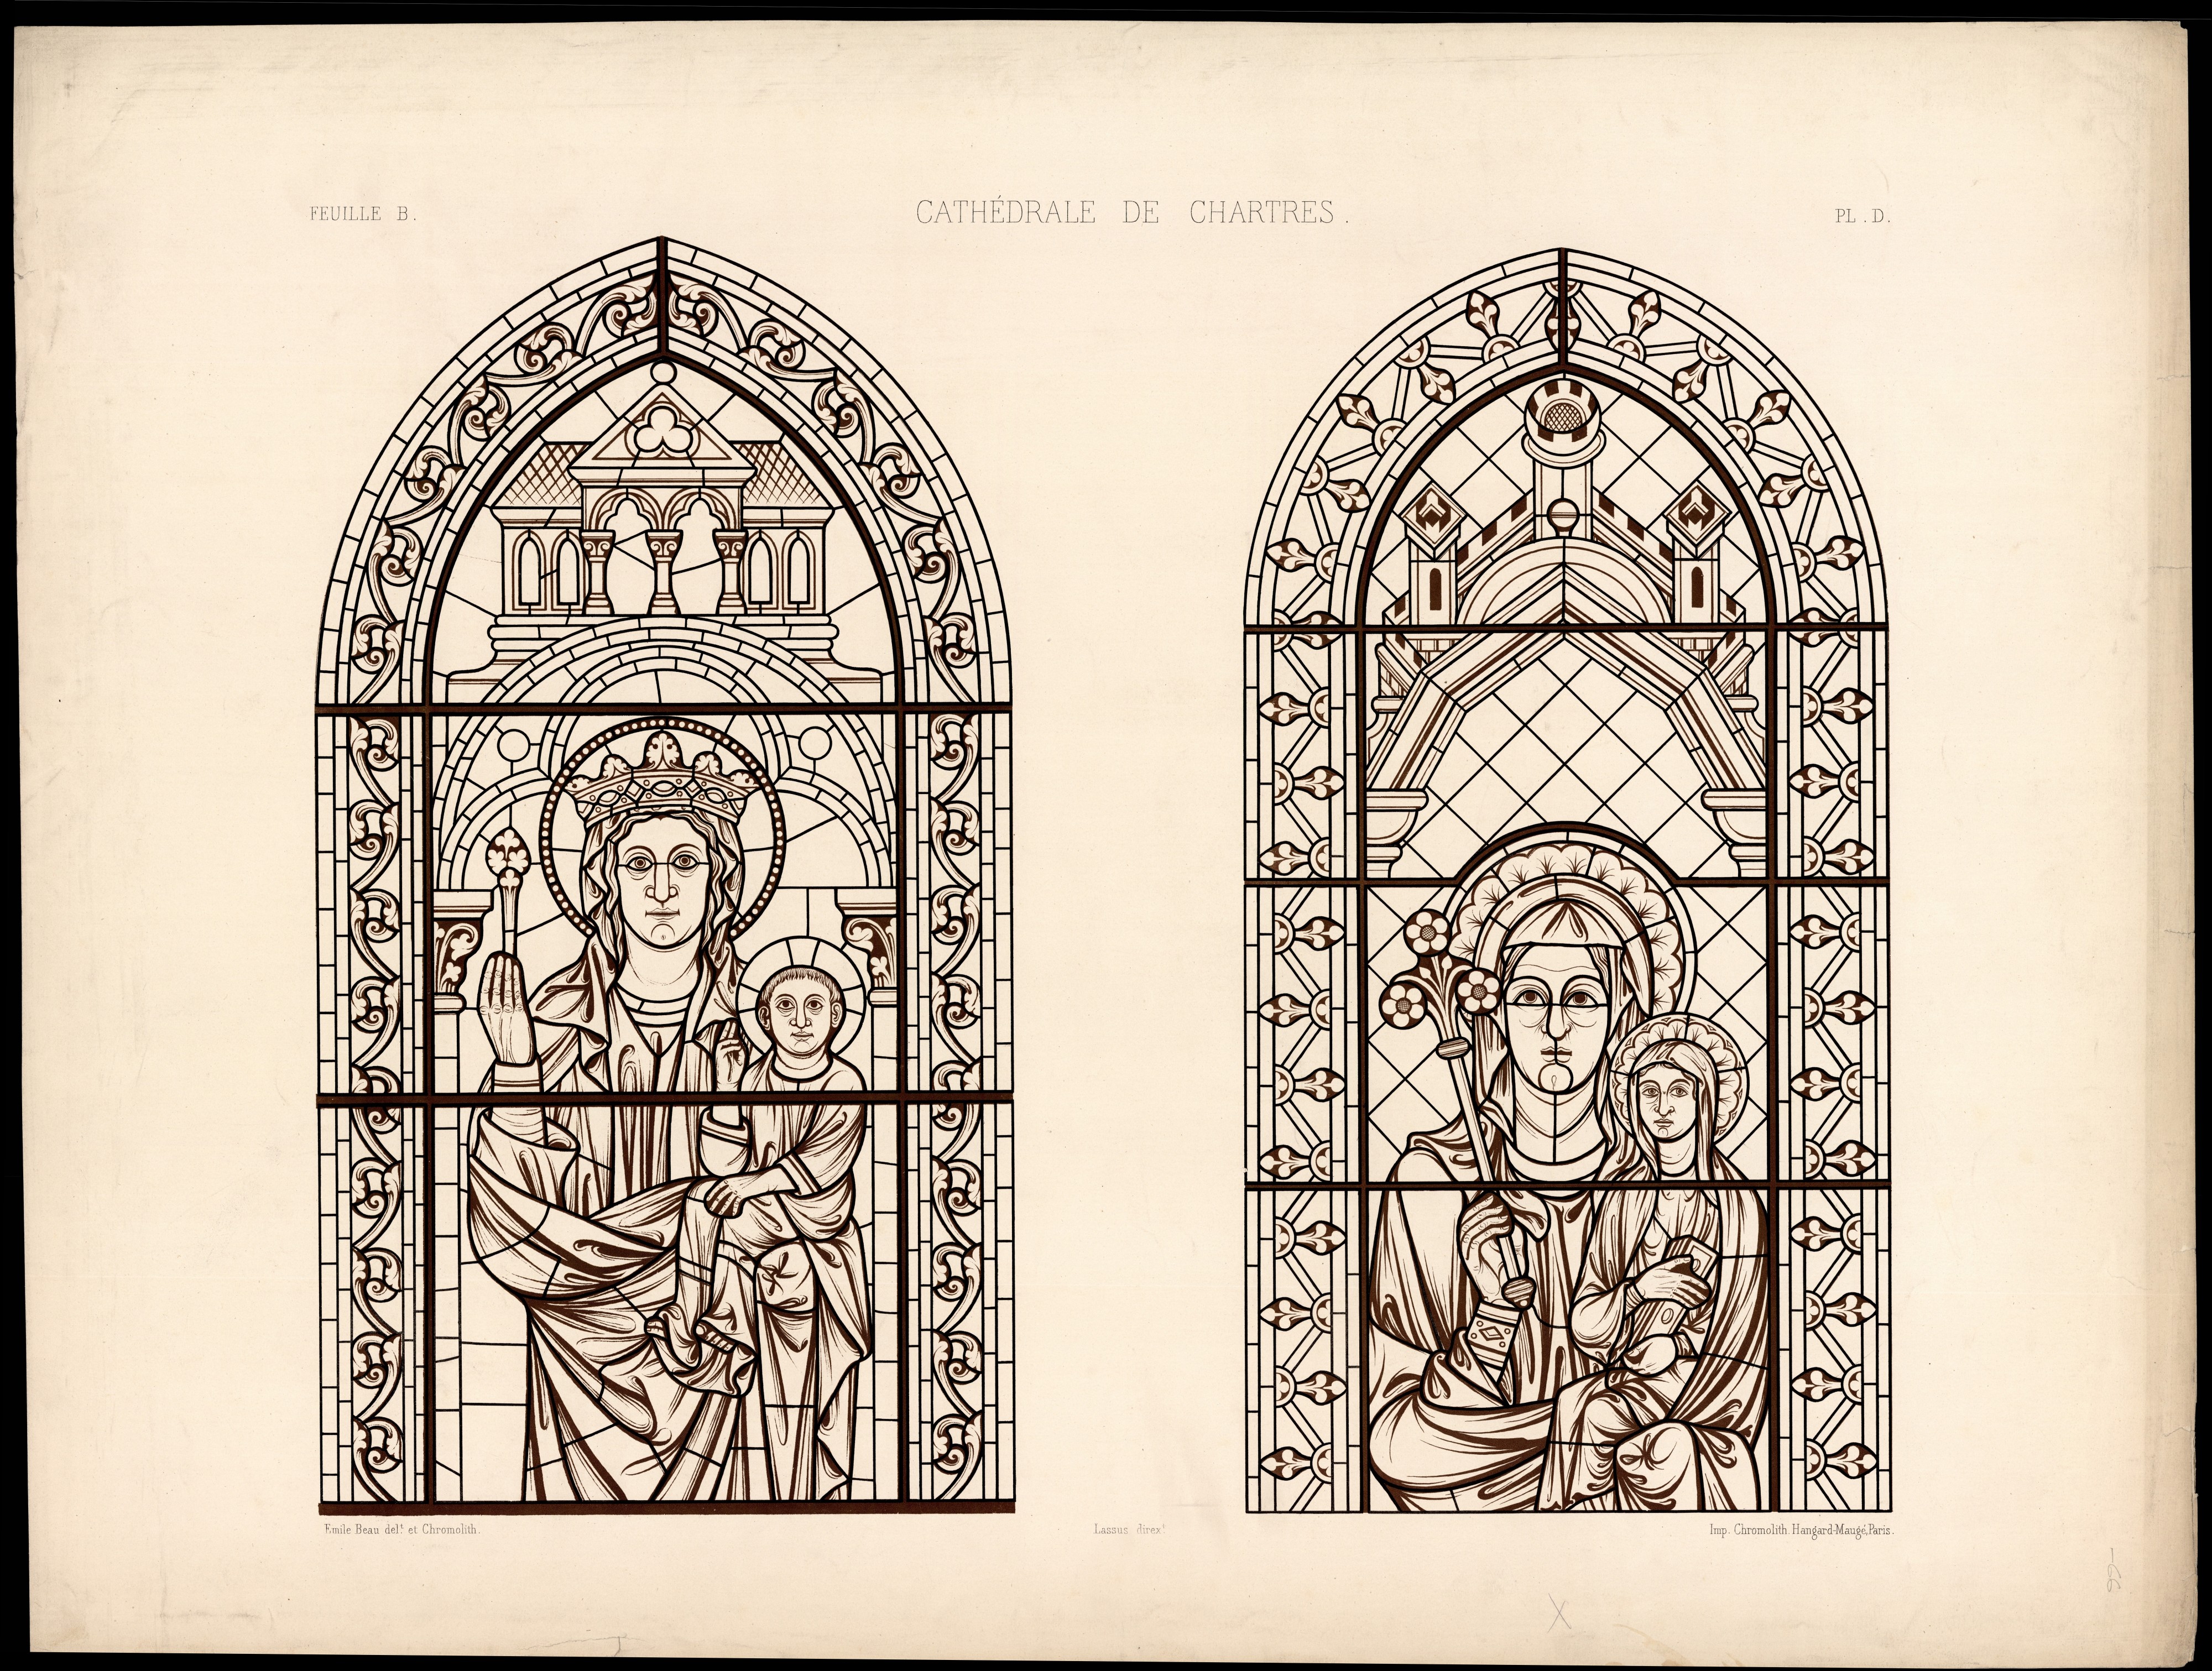 Monografie de la Cathedrale de Chartres - Atlas - Vitrail de sainte Anne portant la Sainte Vierge Feuille B